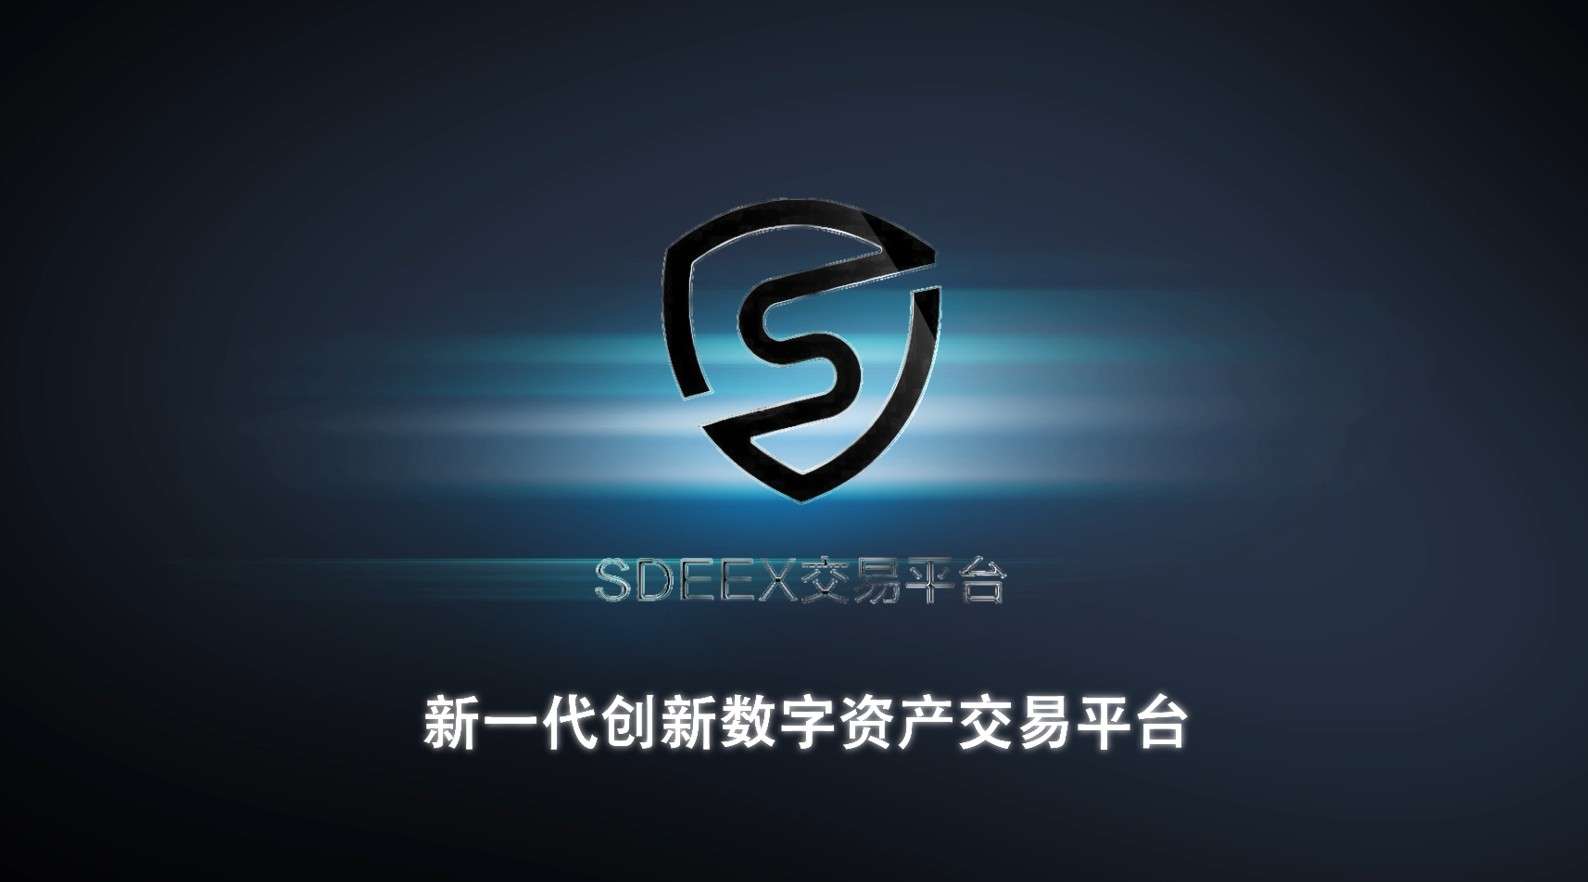 SDEEX 新一代创新数字资产交易平台